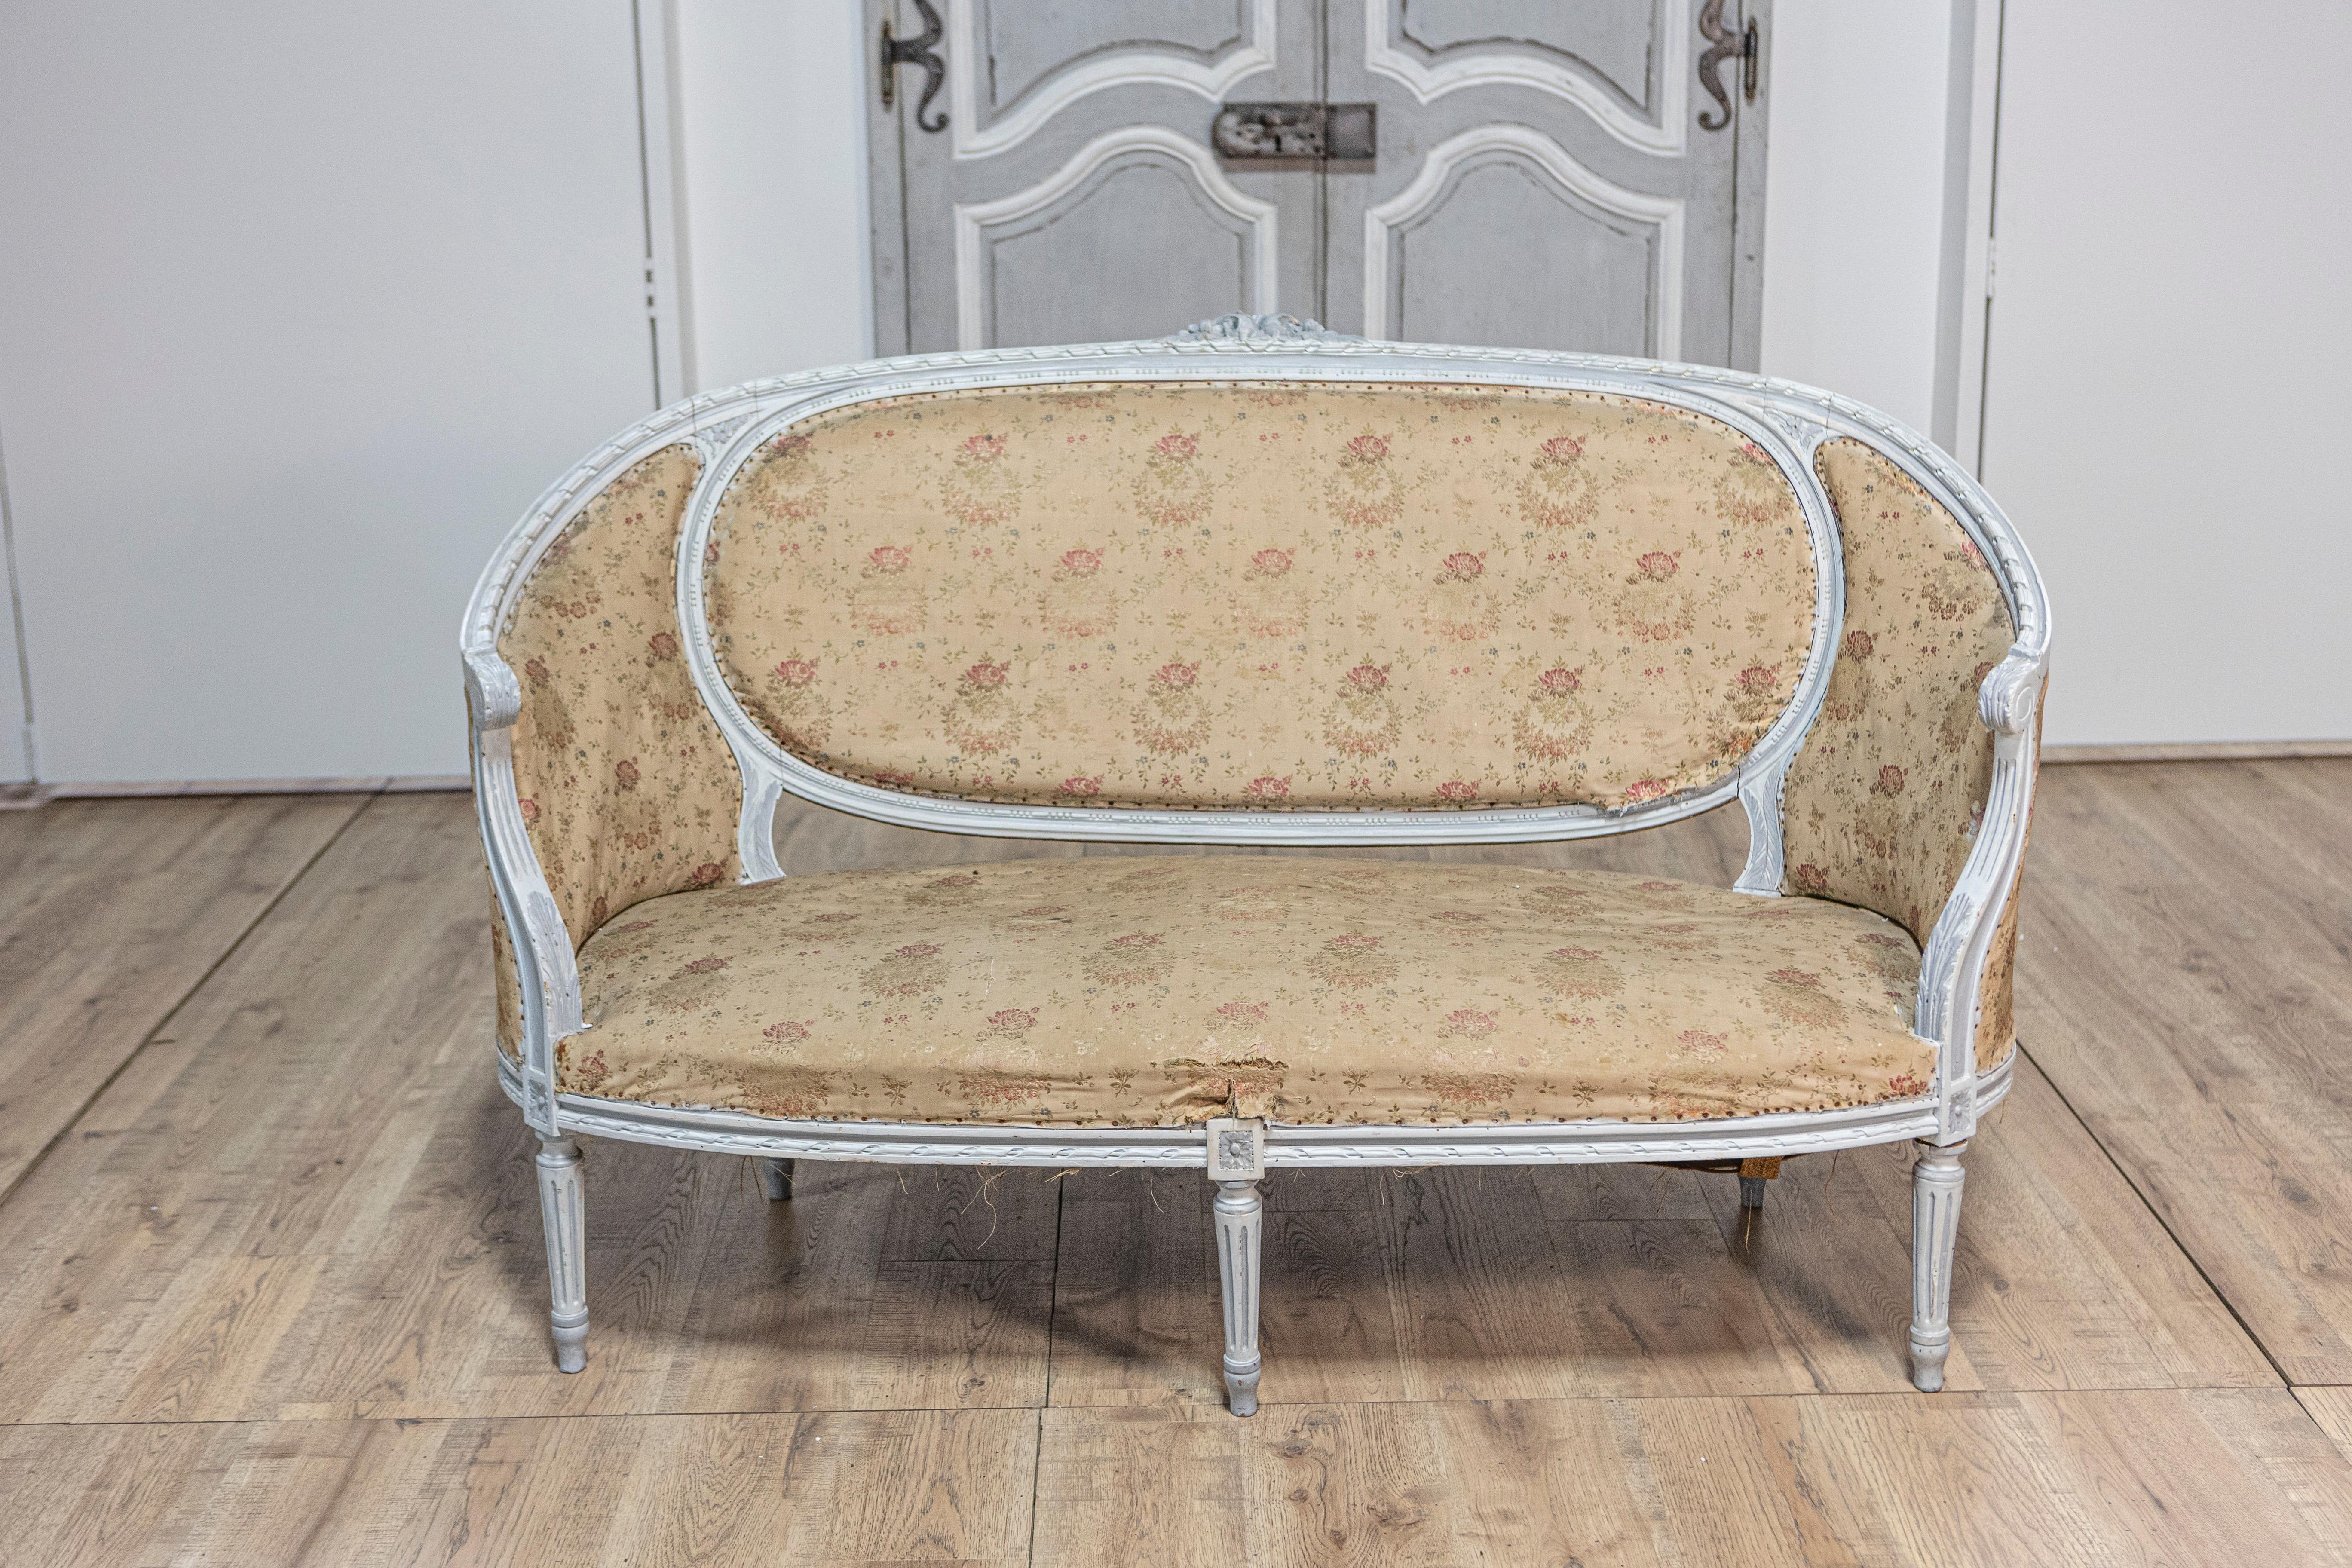 Französisches Sofa im Louis-XVI-Stil aus der Zeit um 1900 mit zart hellblauem Anstrich, geschnitztem Blumenmotiv auf dem Kamm, geschwungenen Armen und kannelierten Beinen. Dieses französische Sofa im Louis-XVI-Stil, das als Canapé corbeille bekannt